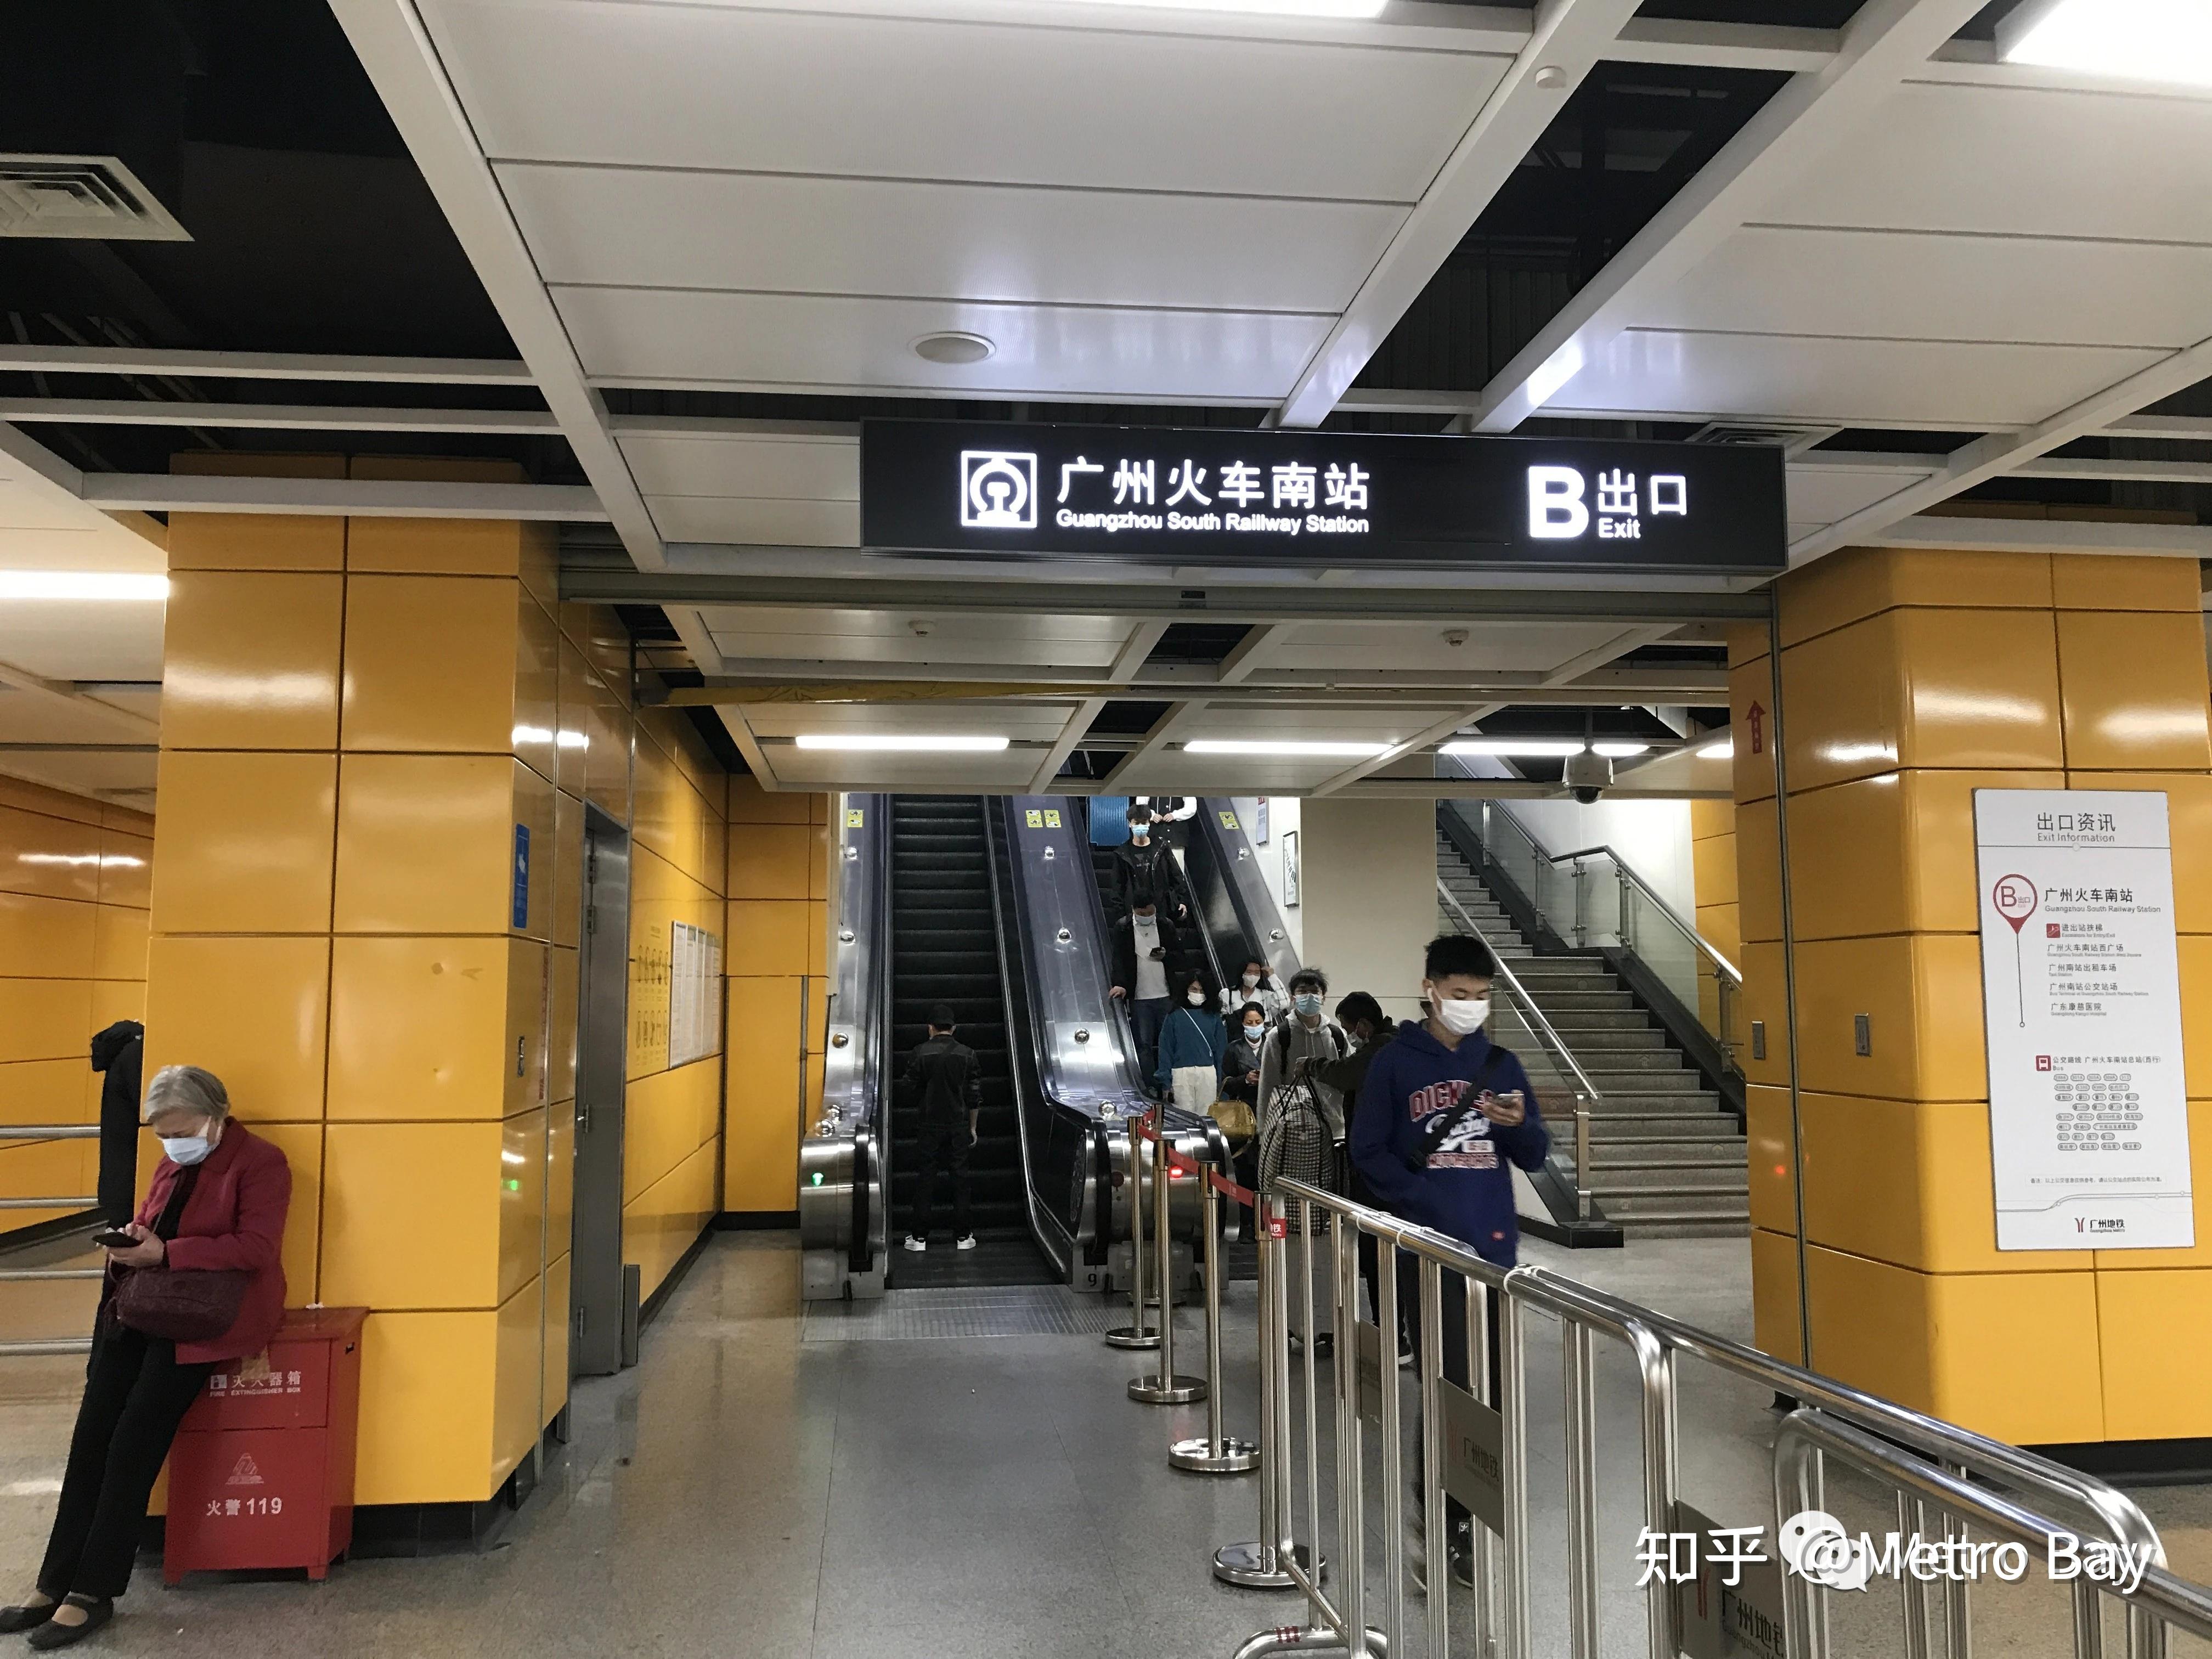 现场直击佛山地铁2号线在广州南站出站换乘有多痛苦